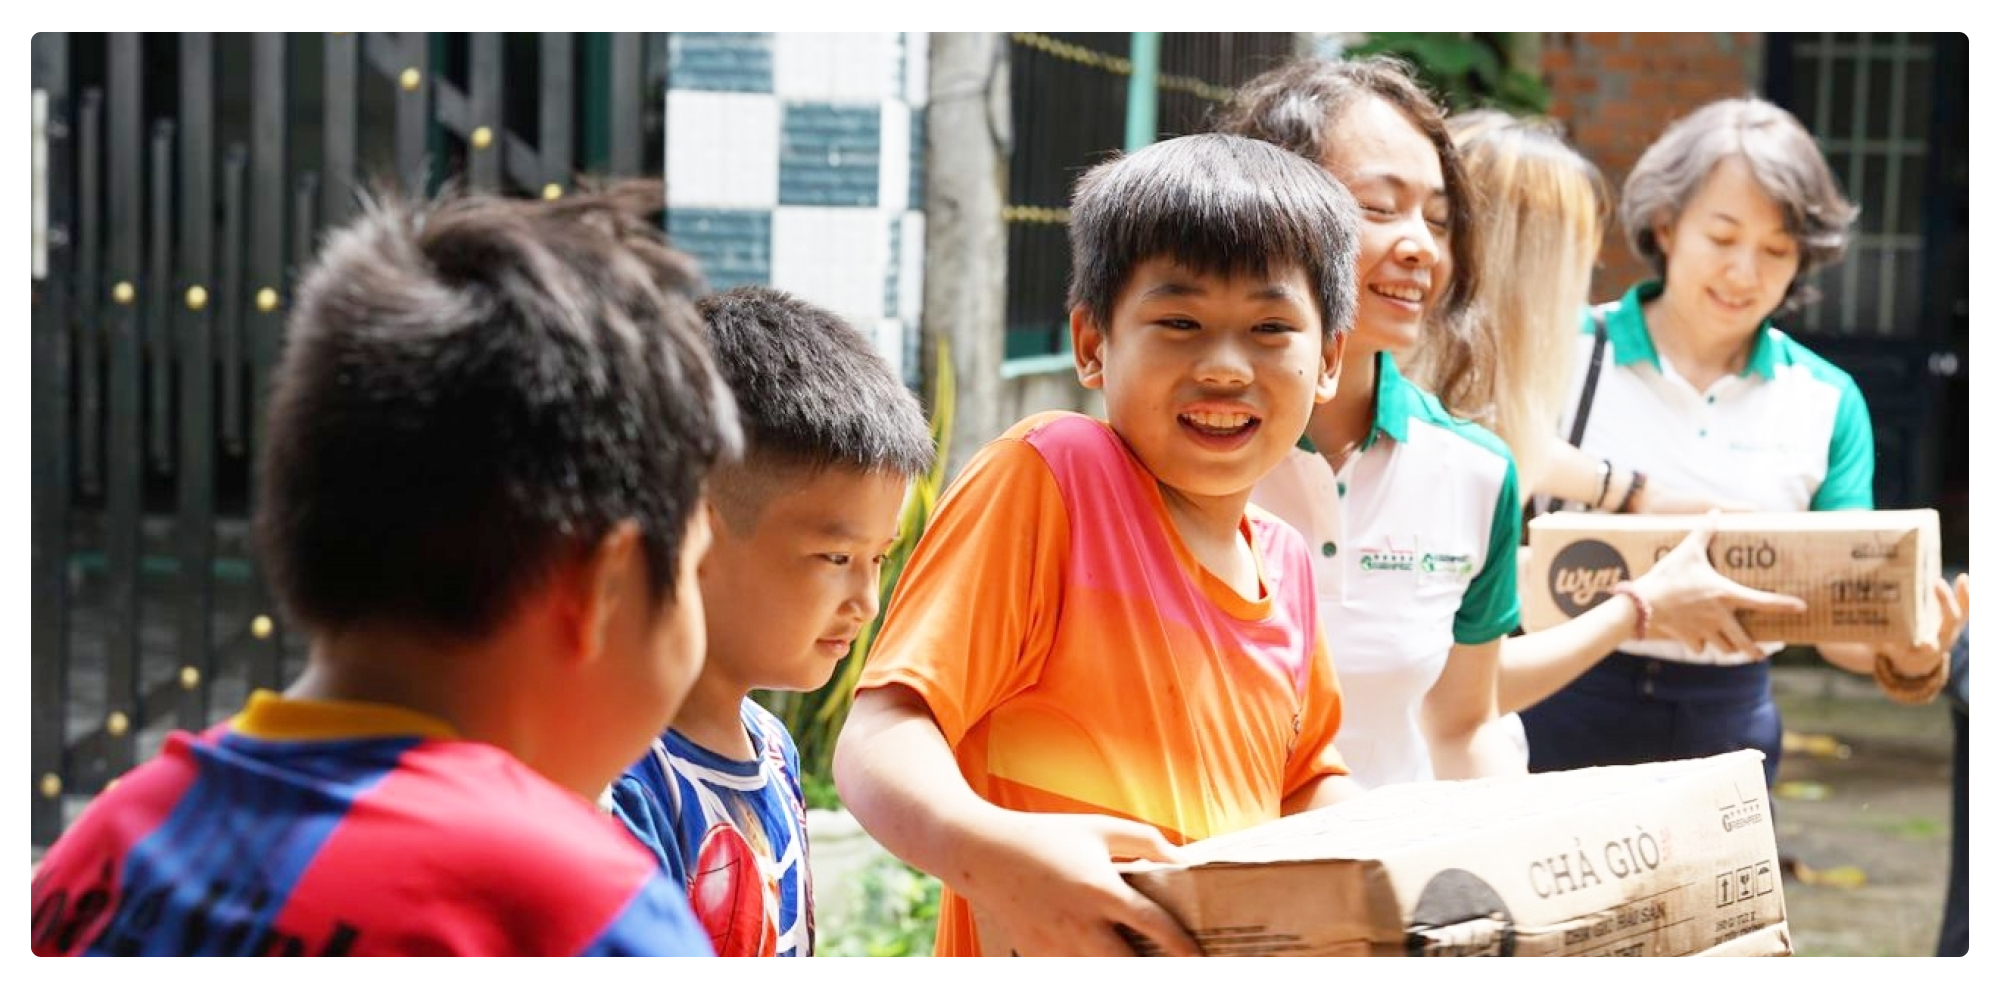 1,5 triệu bữa ăn cho trẻ em Việt Nam và ước mơ gieo mầm hạnh phúc từ những điều giản đơn - Ảnh 11.